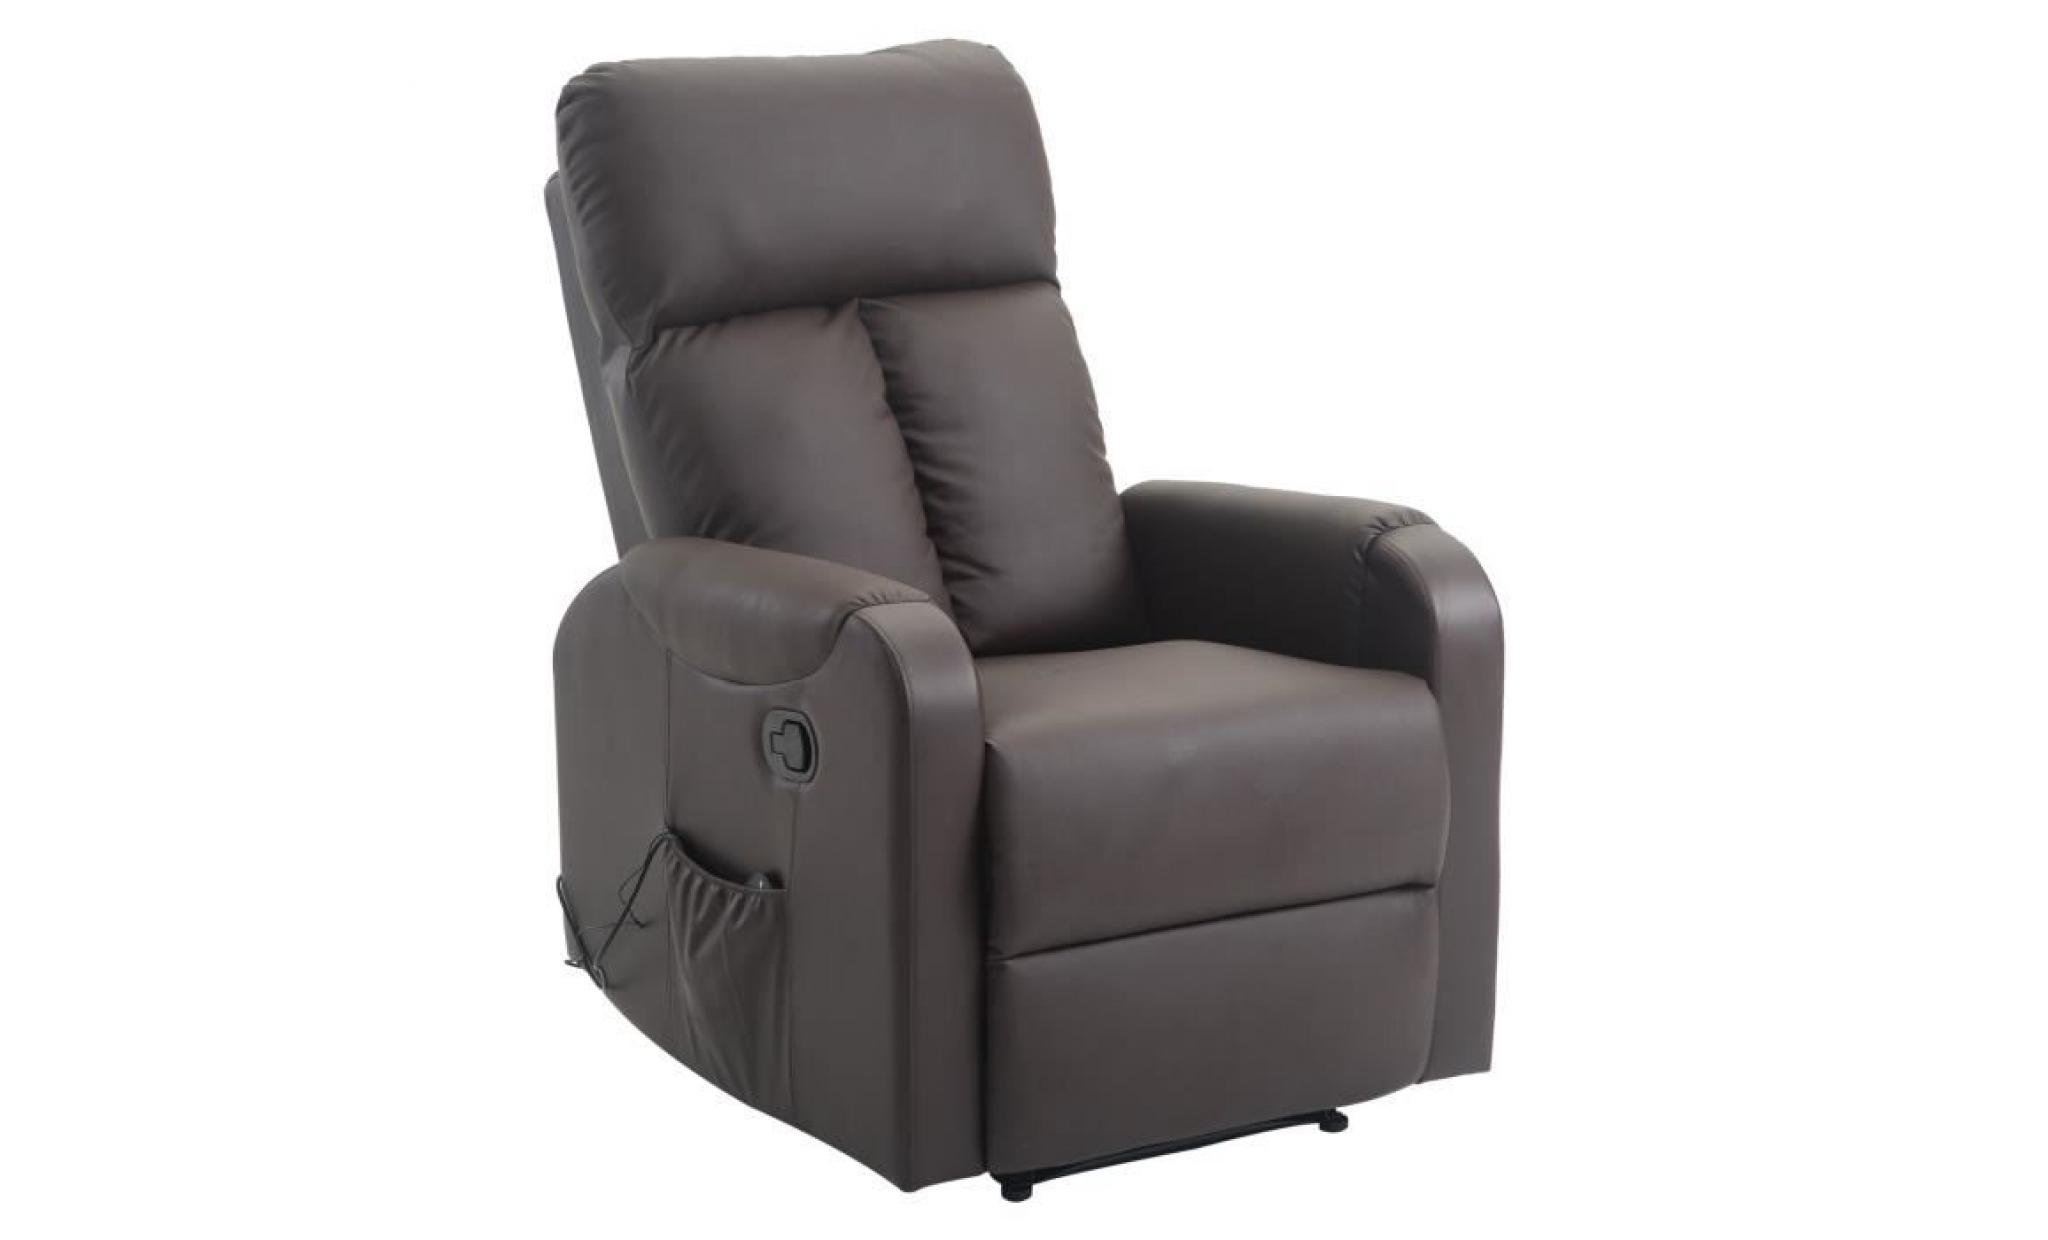 fauteuil de massage relaxation électrique chauffant inclinable inclinable 180° avec repose pied ajustable coloris marron neuf 64